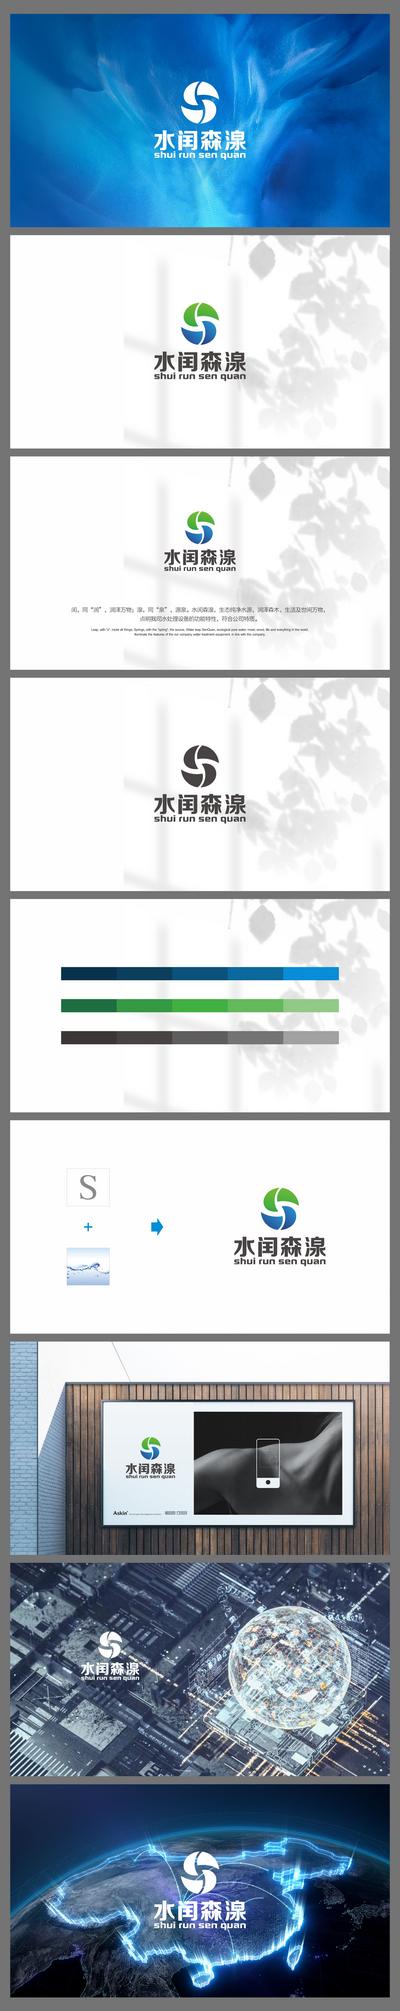 南门网 广告 海报 标志 VI 科技 视觉系统 LOGO 设计 提案 品牌 绿色 环保 能源